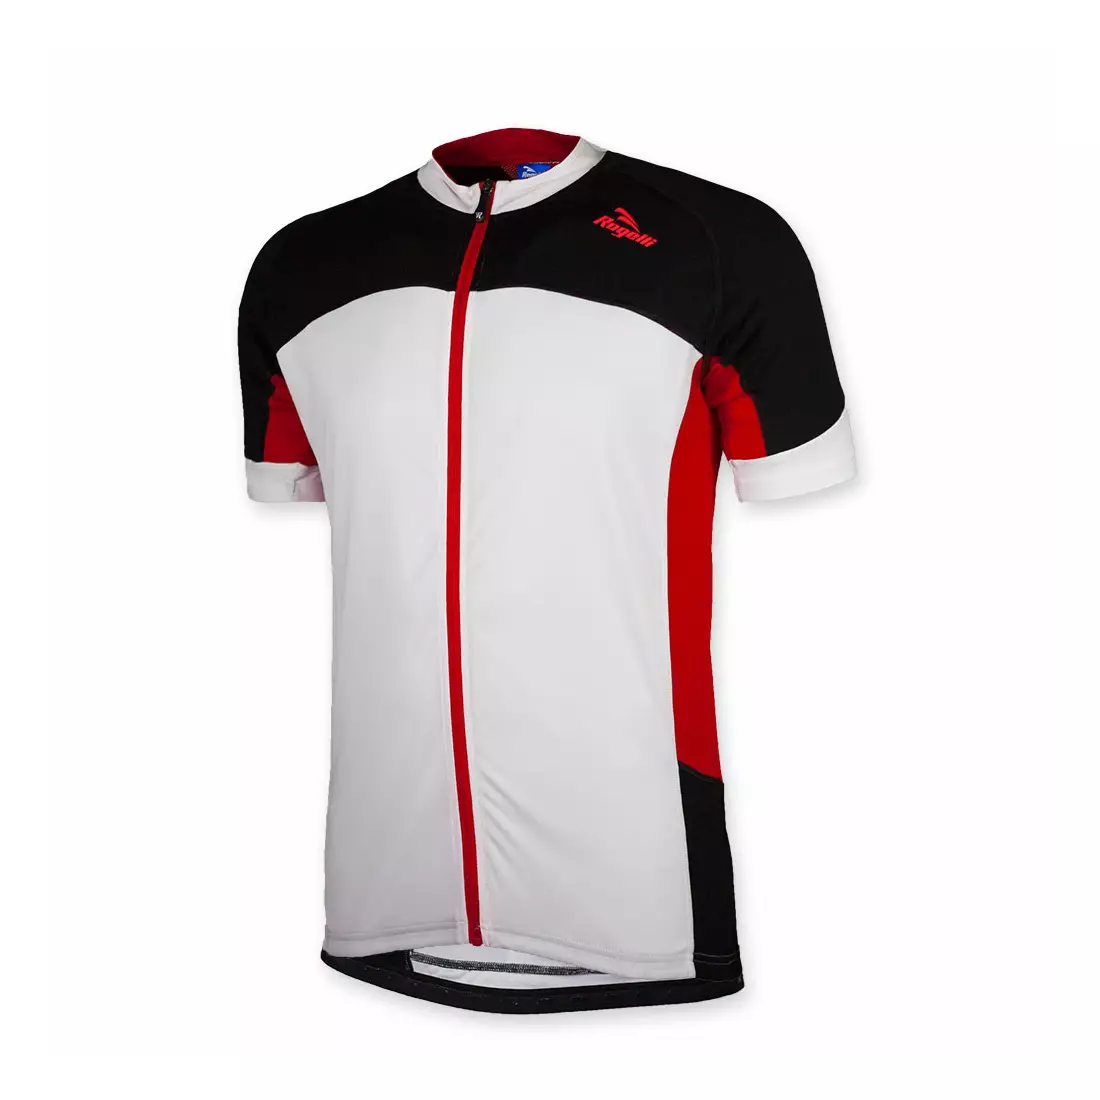 Pánský cyklistický dres ROGELLI RECCO, bílo-červený